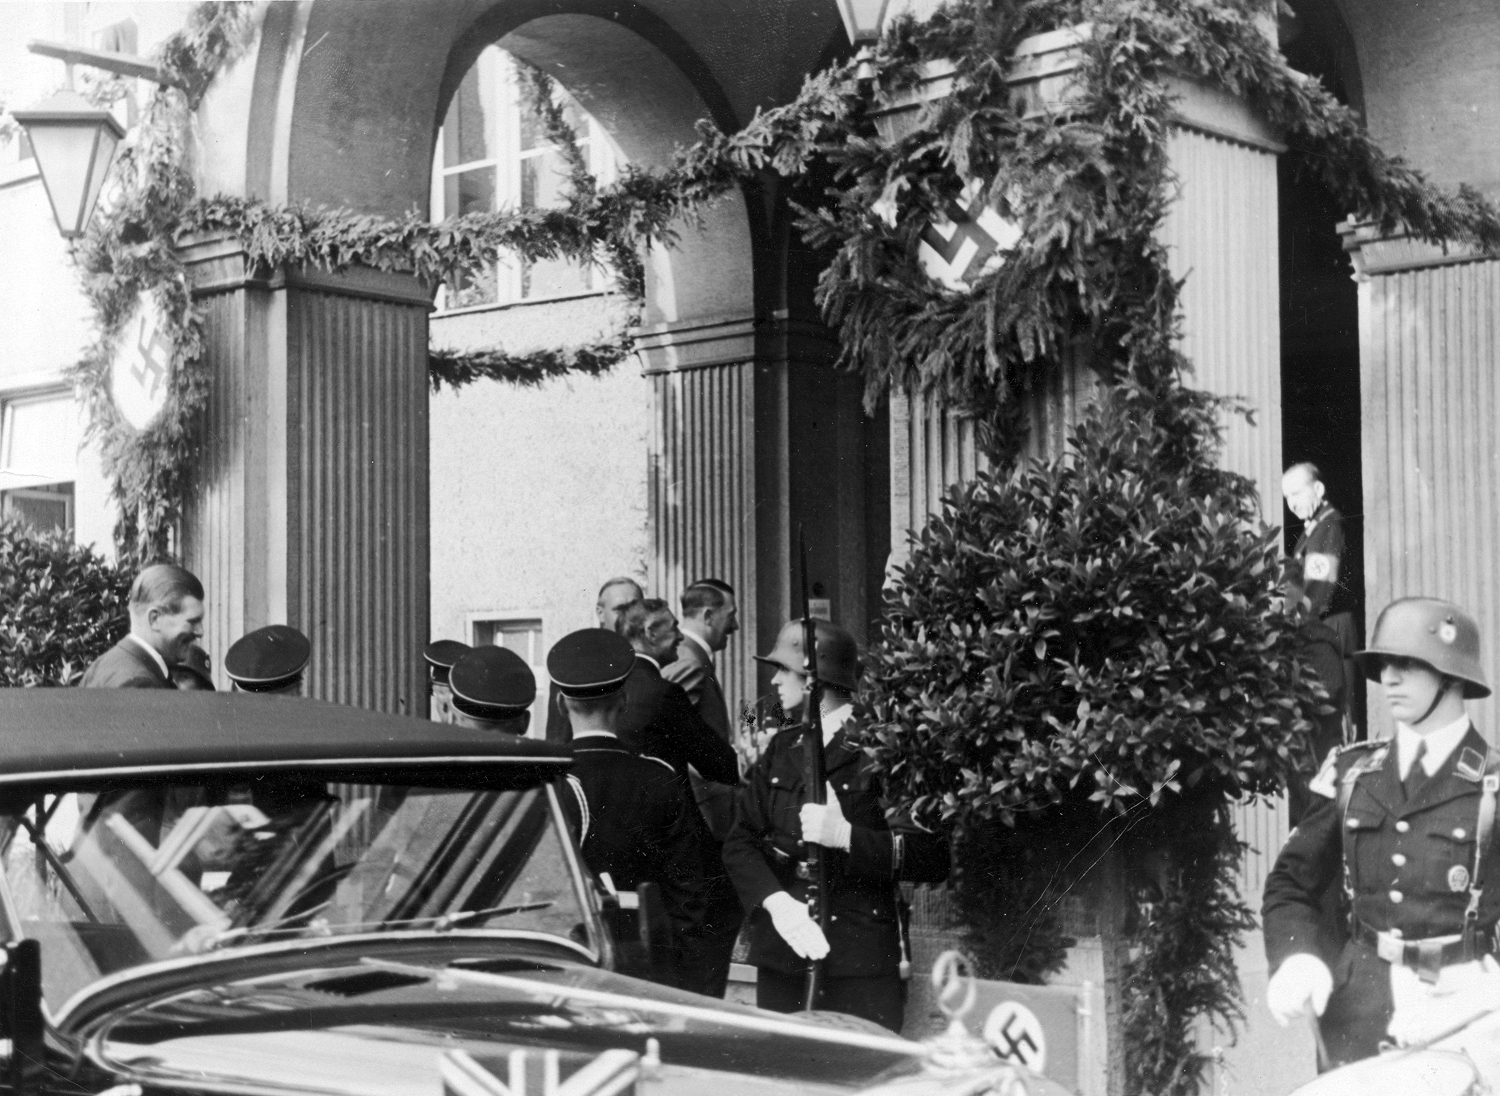 Adolf Hitler and Neville Chamberlain meet at the Hotel Rheinhotel Dreesen in Bad Godesberg